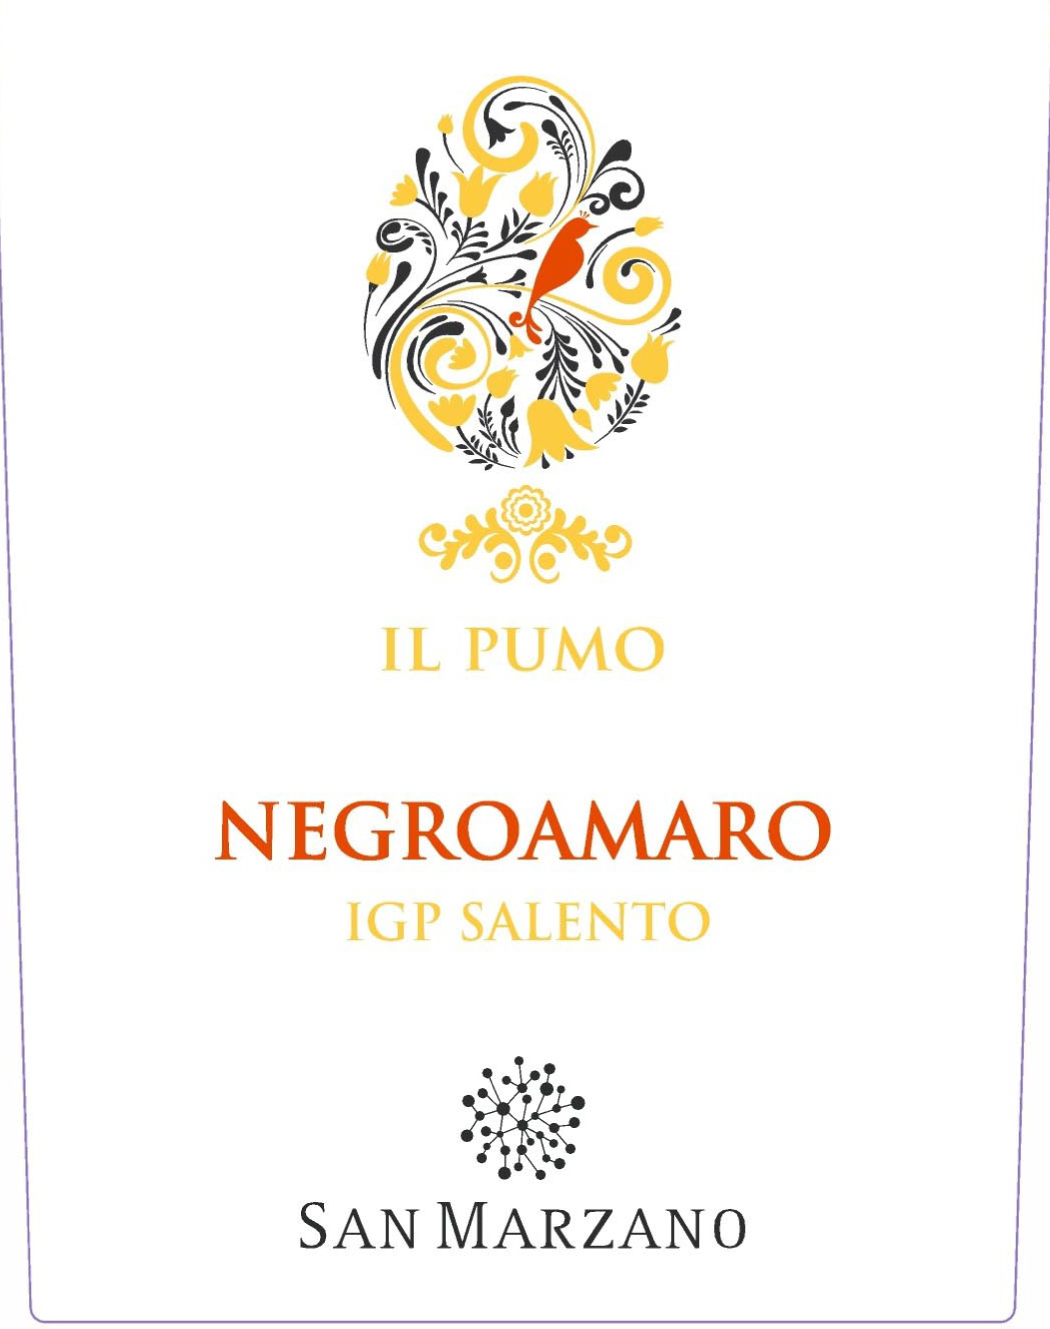 San Marzano - Il Pumo Negroamaro label